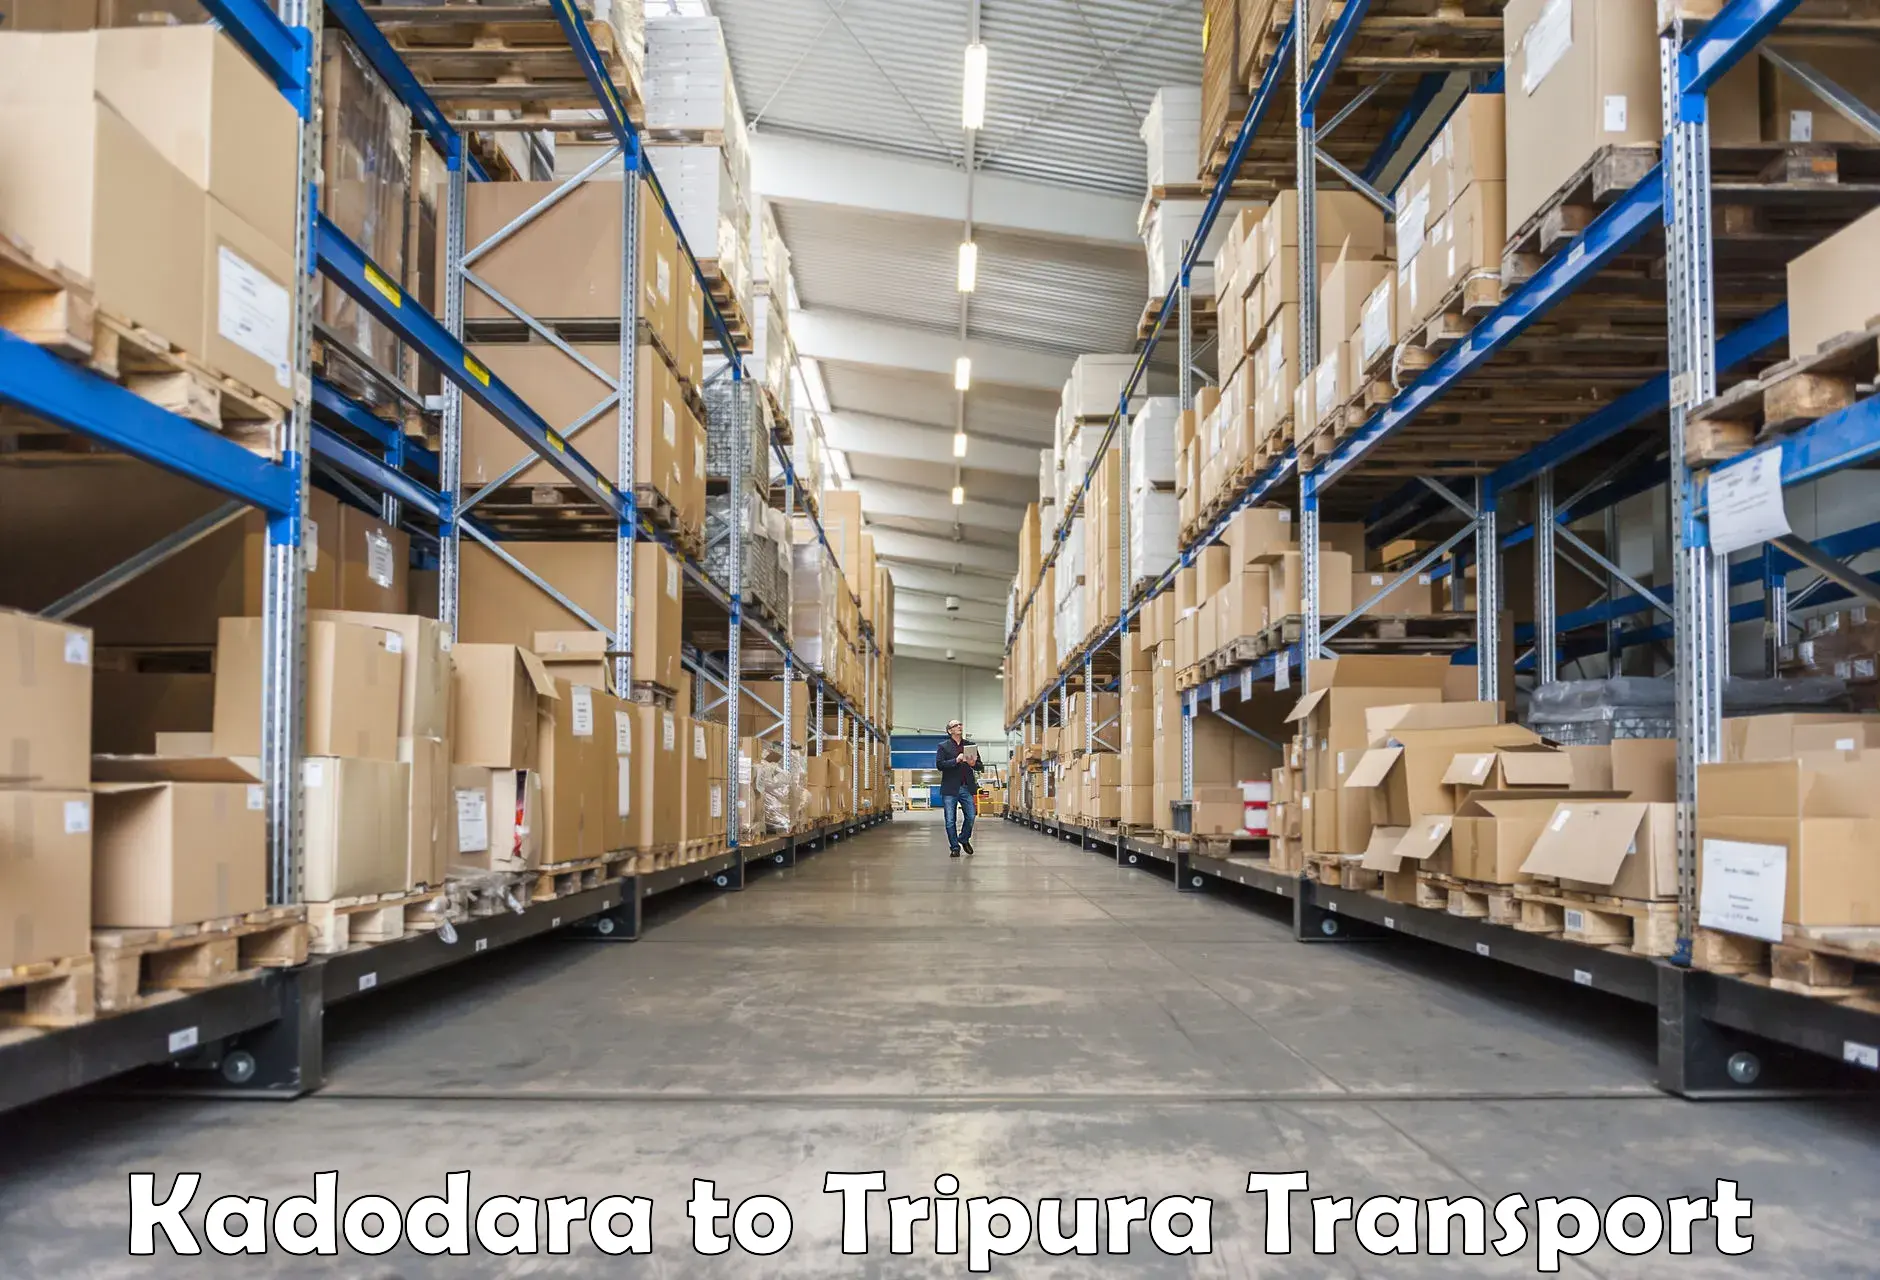 India truck logistics services Kadodara to Amarpur